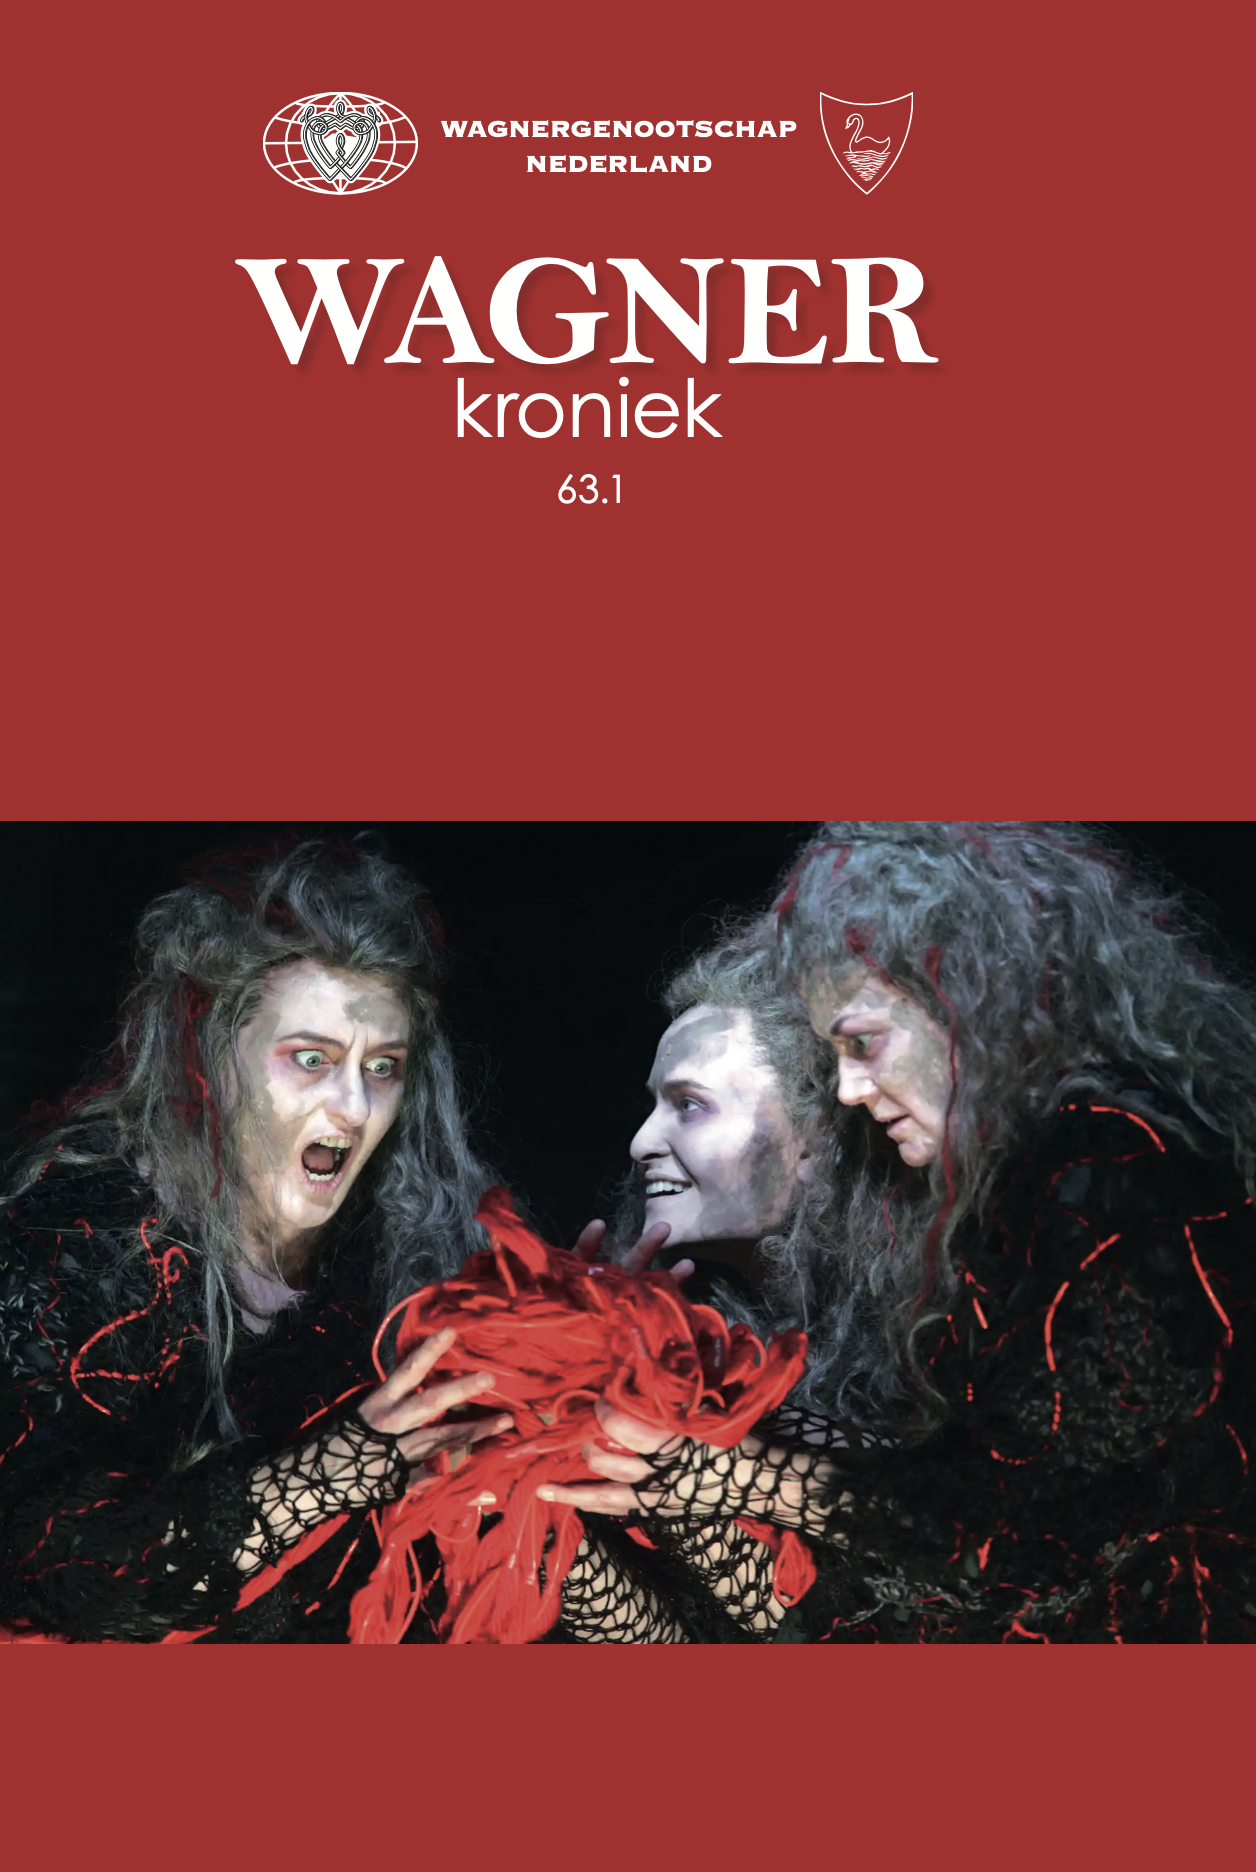 Wagner Kroniek (63.1)